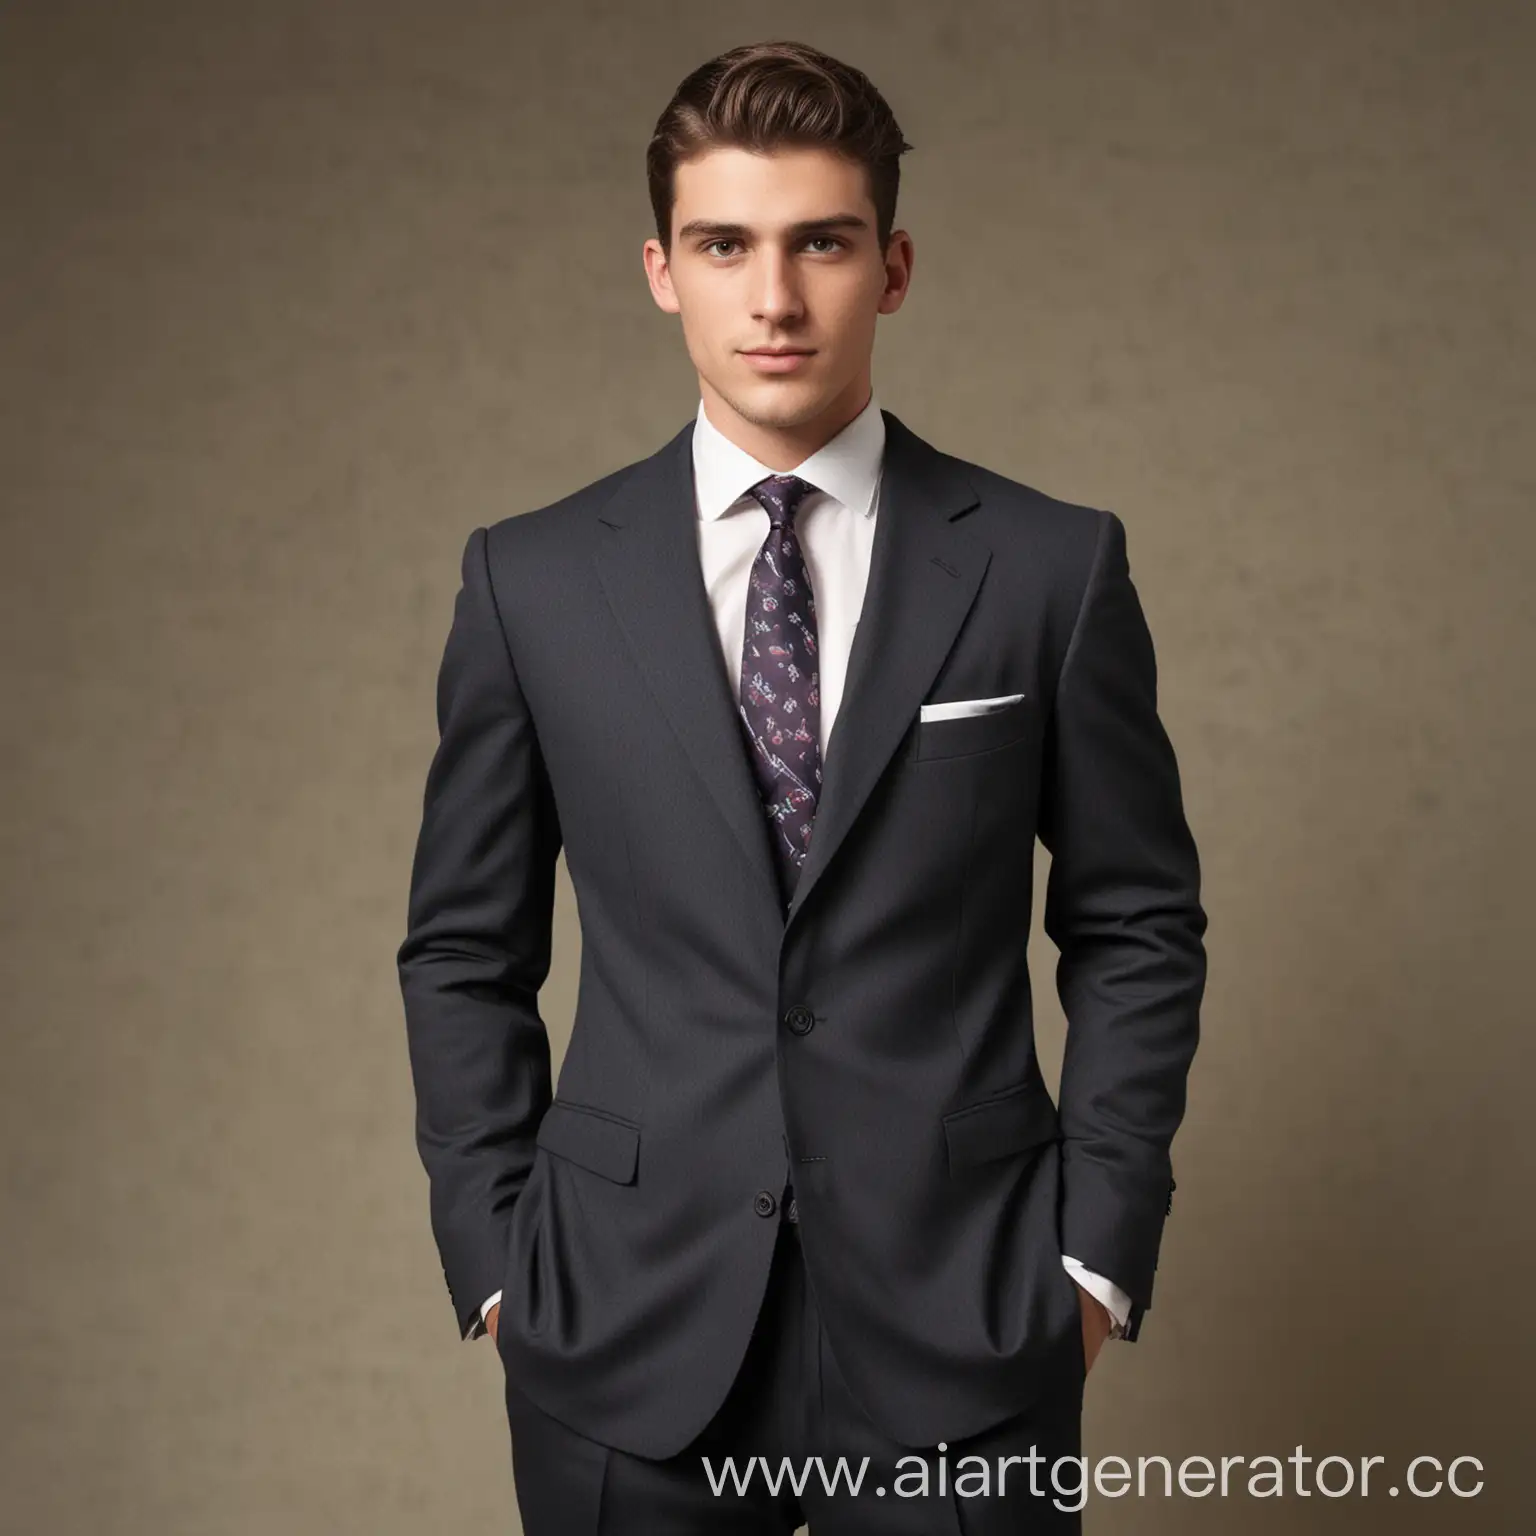 Мужчина лет 26 смазливой внешности опрятно одетый в пиджак брюки и галстук